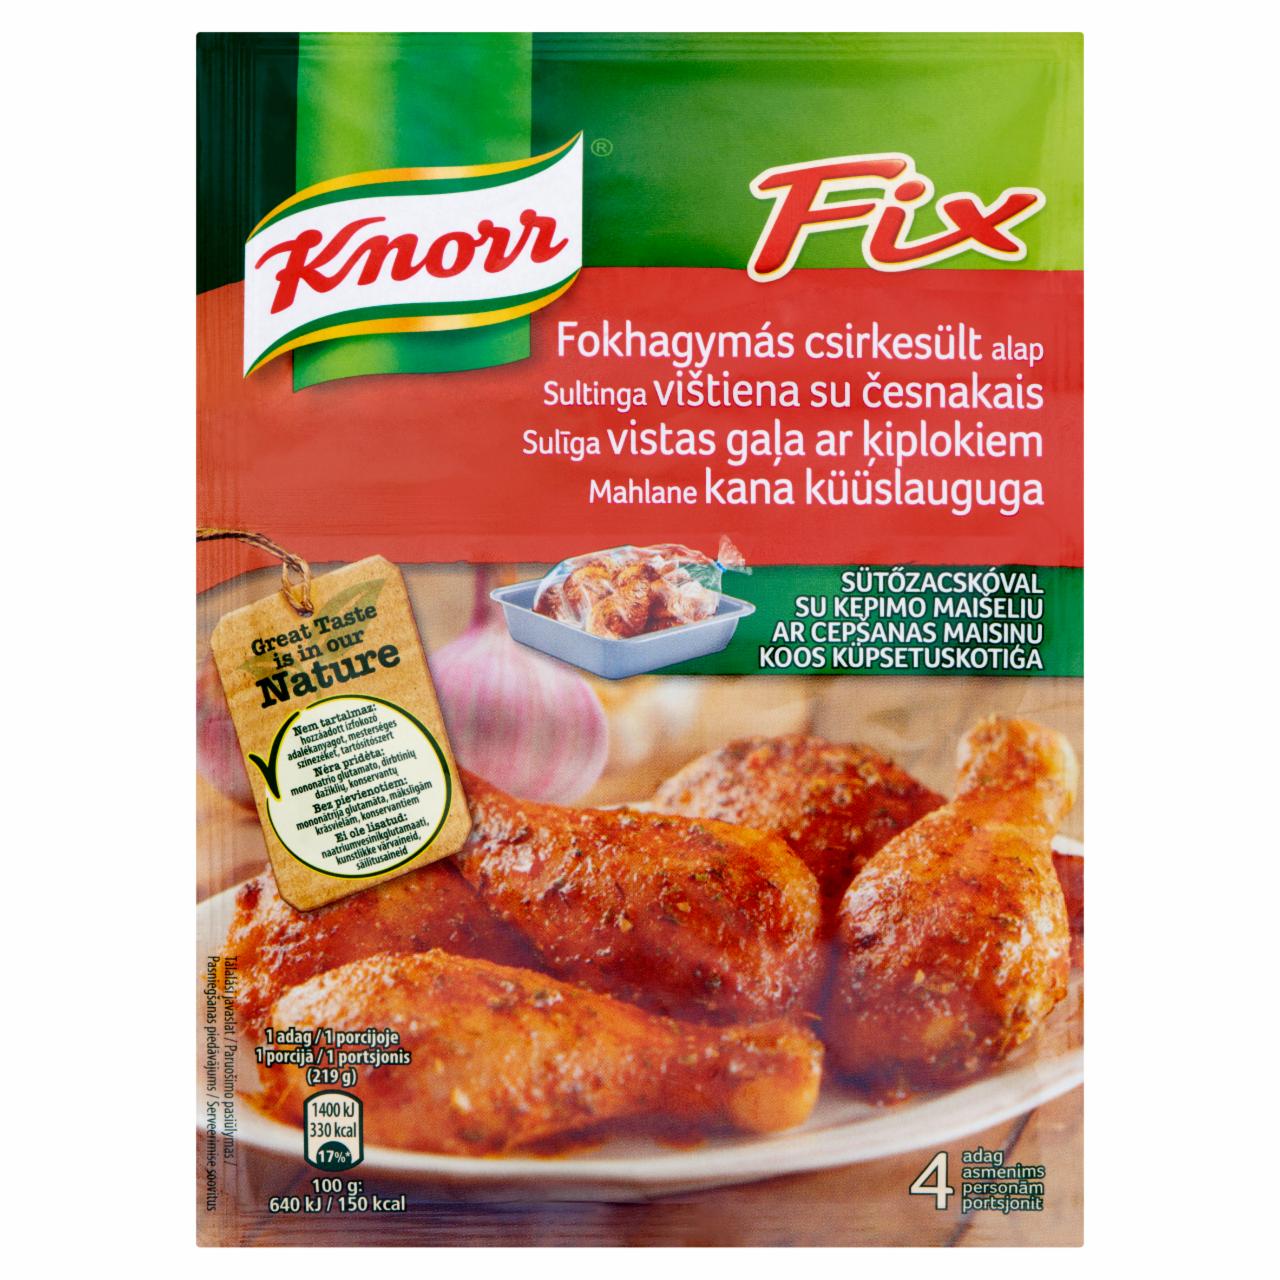 Képek - Knorr Fix fokhagymás csirkesült alap 28 g